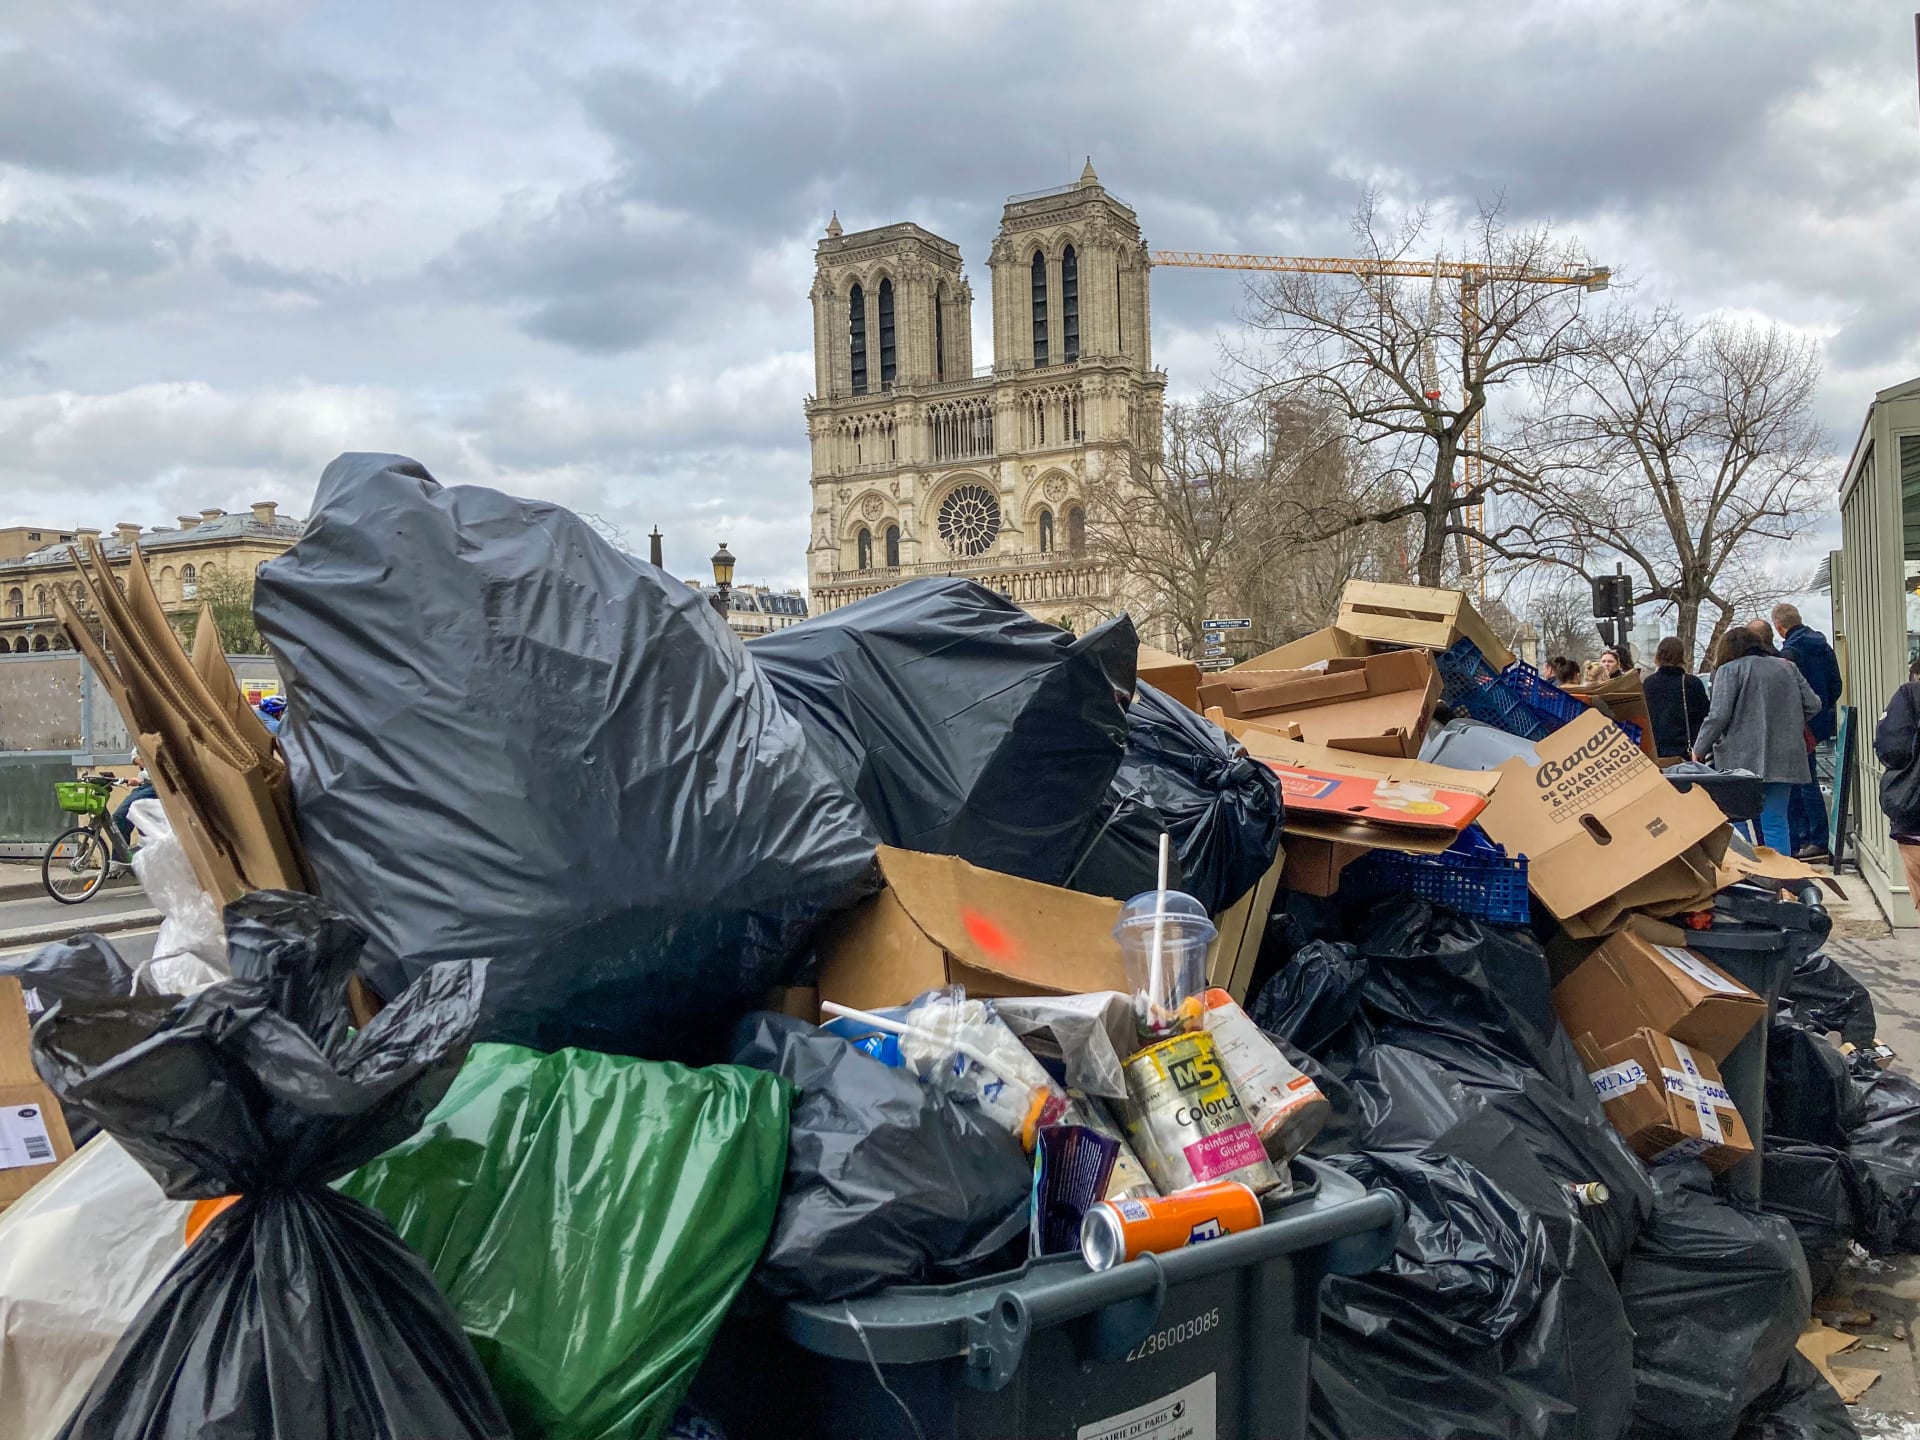 REPORTÁŽ: Město lásky v plamenech a pod vlnou odpadků. Jak se žije ve stávkující Paříži?